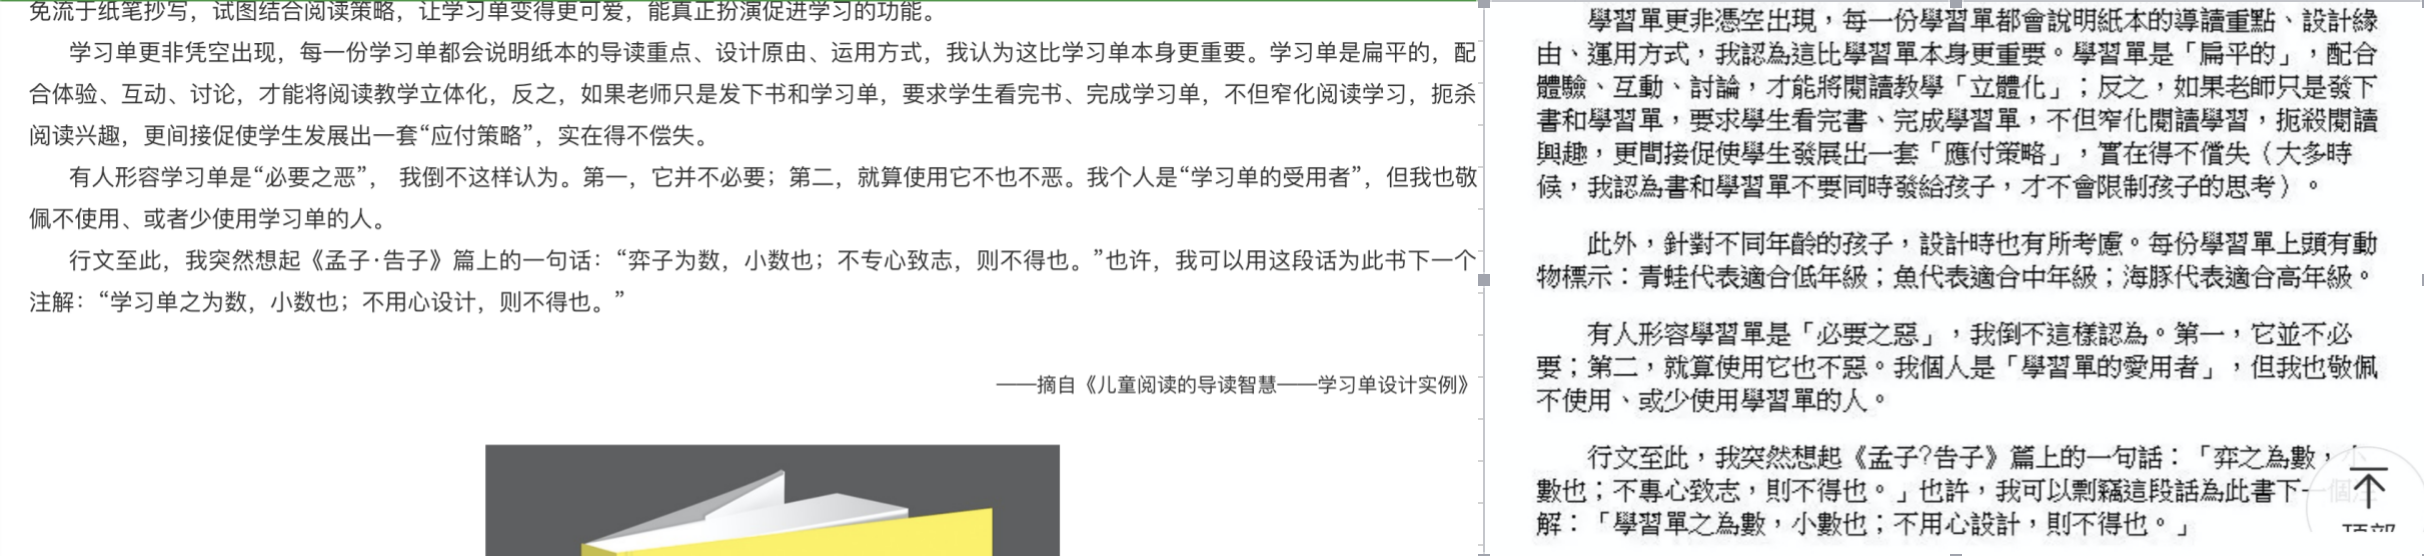 深圳一小学副校长涉嫌抄袭他人书籍，区教育局：正在调查